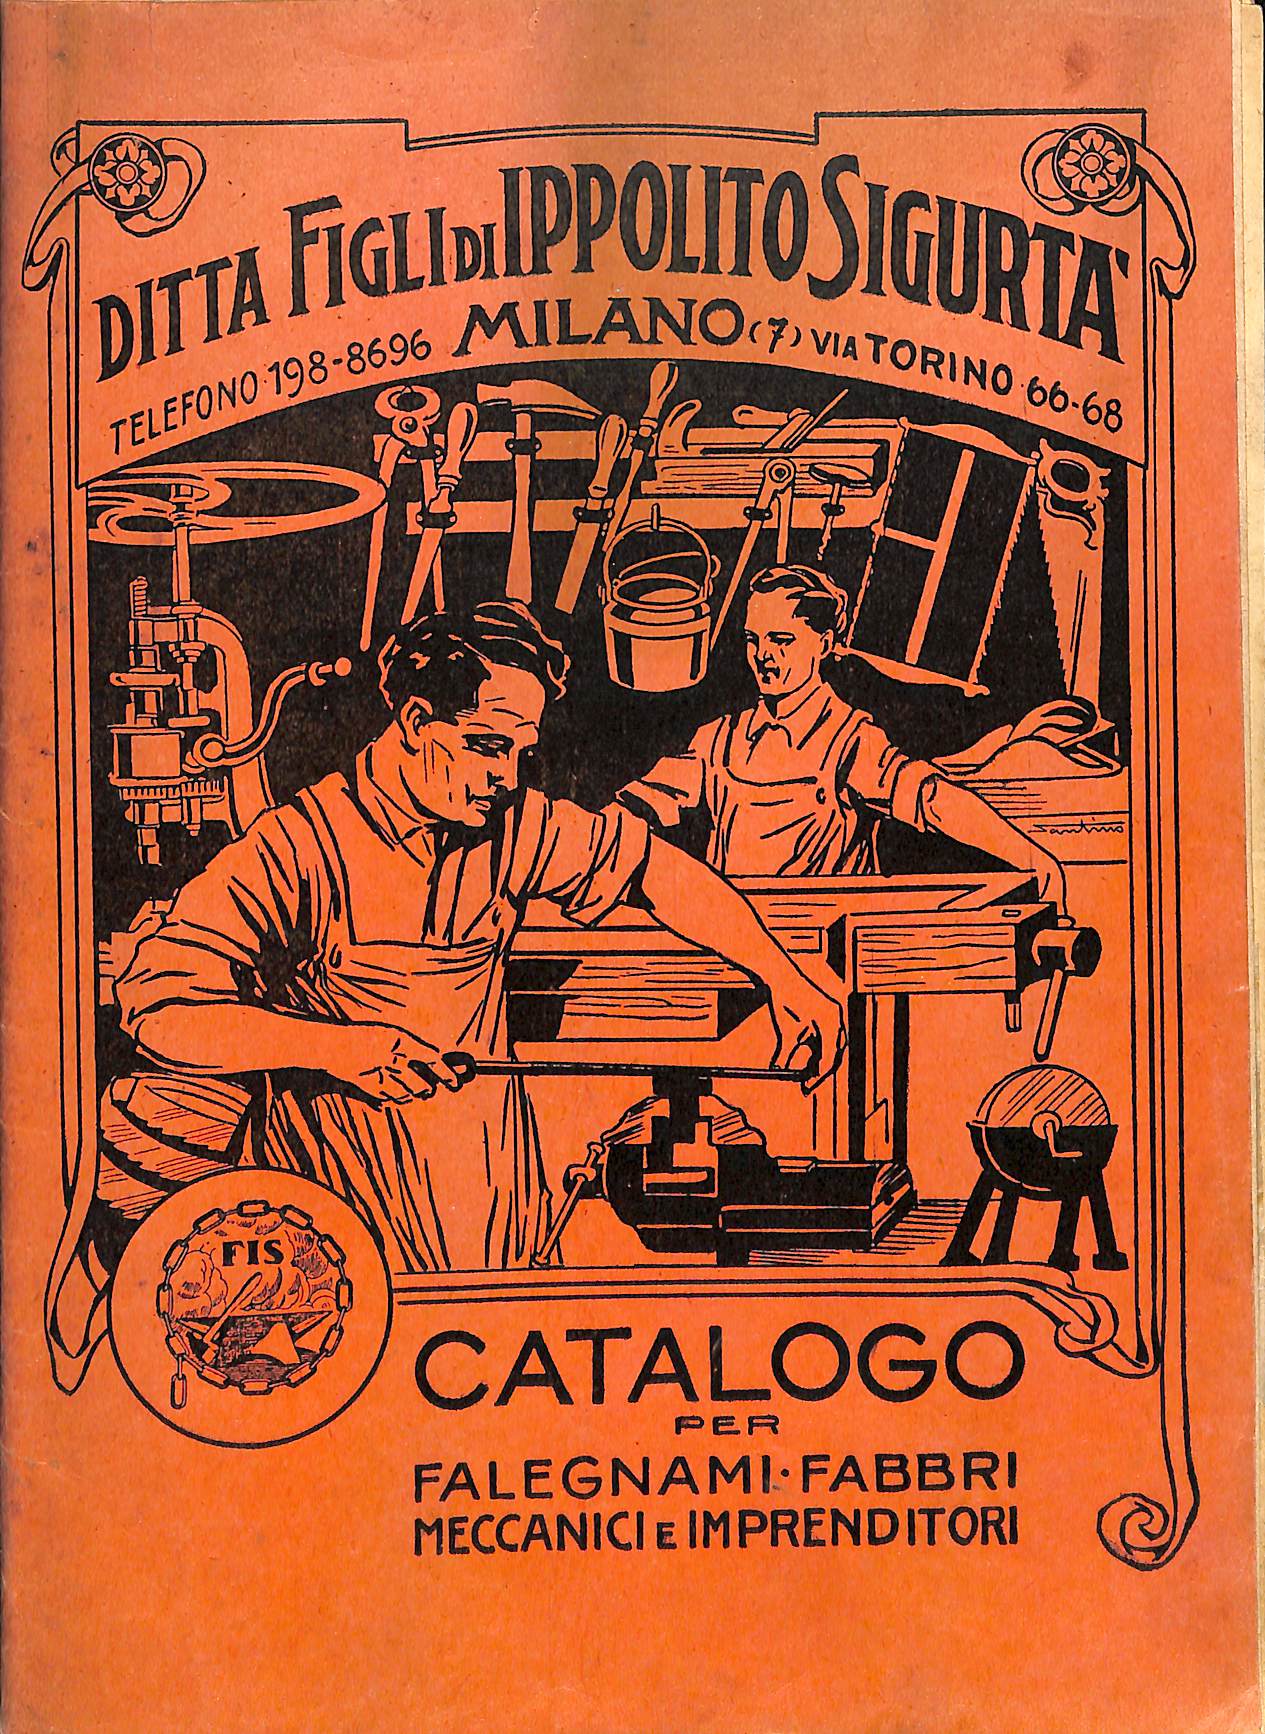 Ditta Figli di Ippolito Sigurtà, Milano. Catalogo utensili per falegnami, fabbri, meccanici, imprenditori